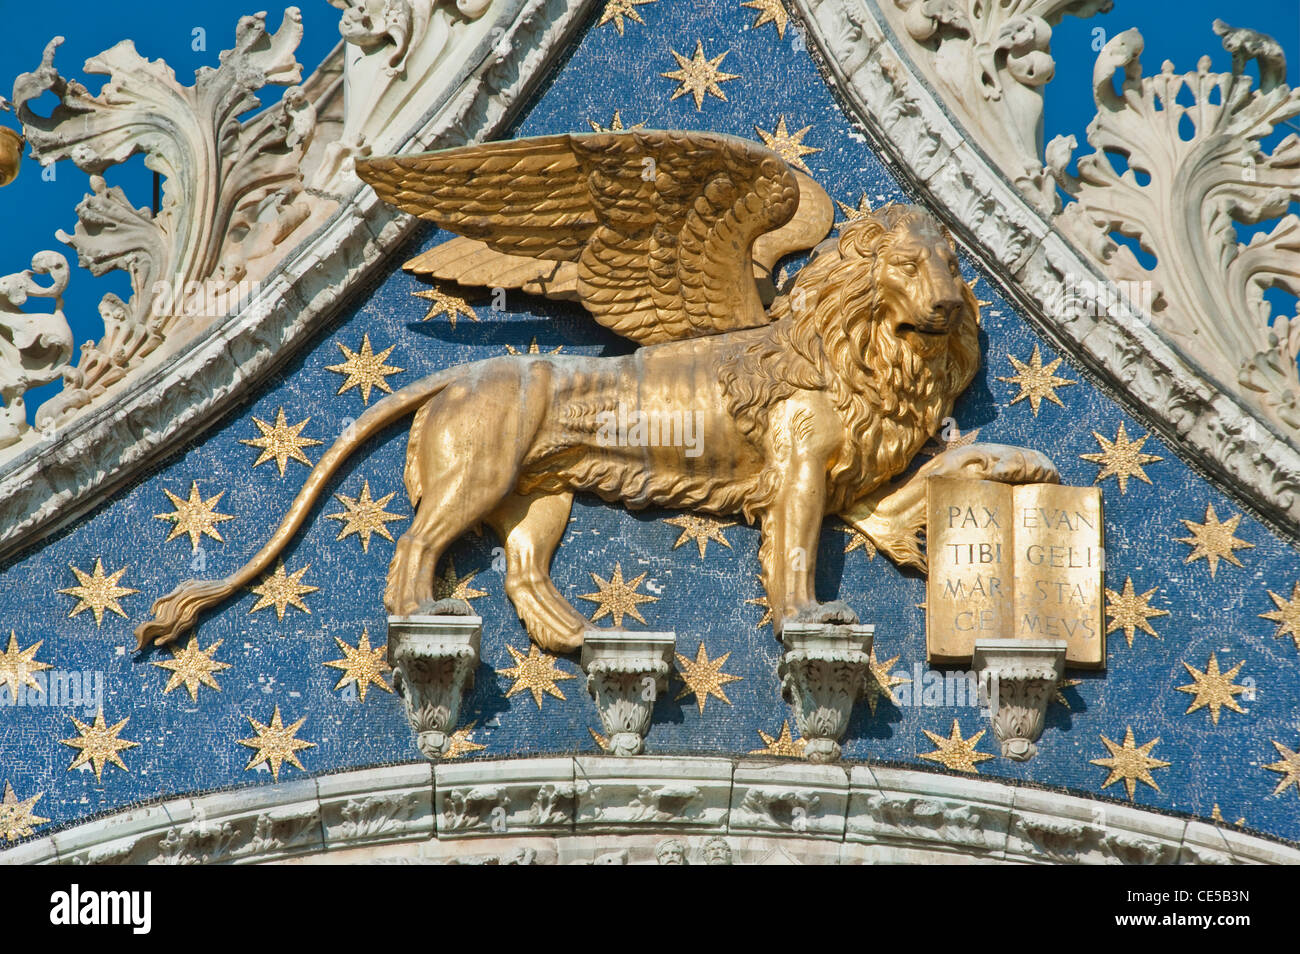 Italia, Venecia, el león alado de San Marcos en la Basílica de San Marcos, símbolo de San Marcos, Patrono de Venecia Foto de stock